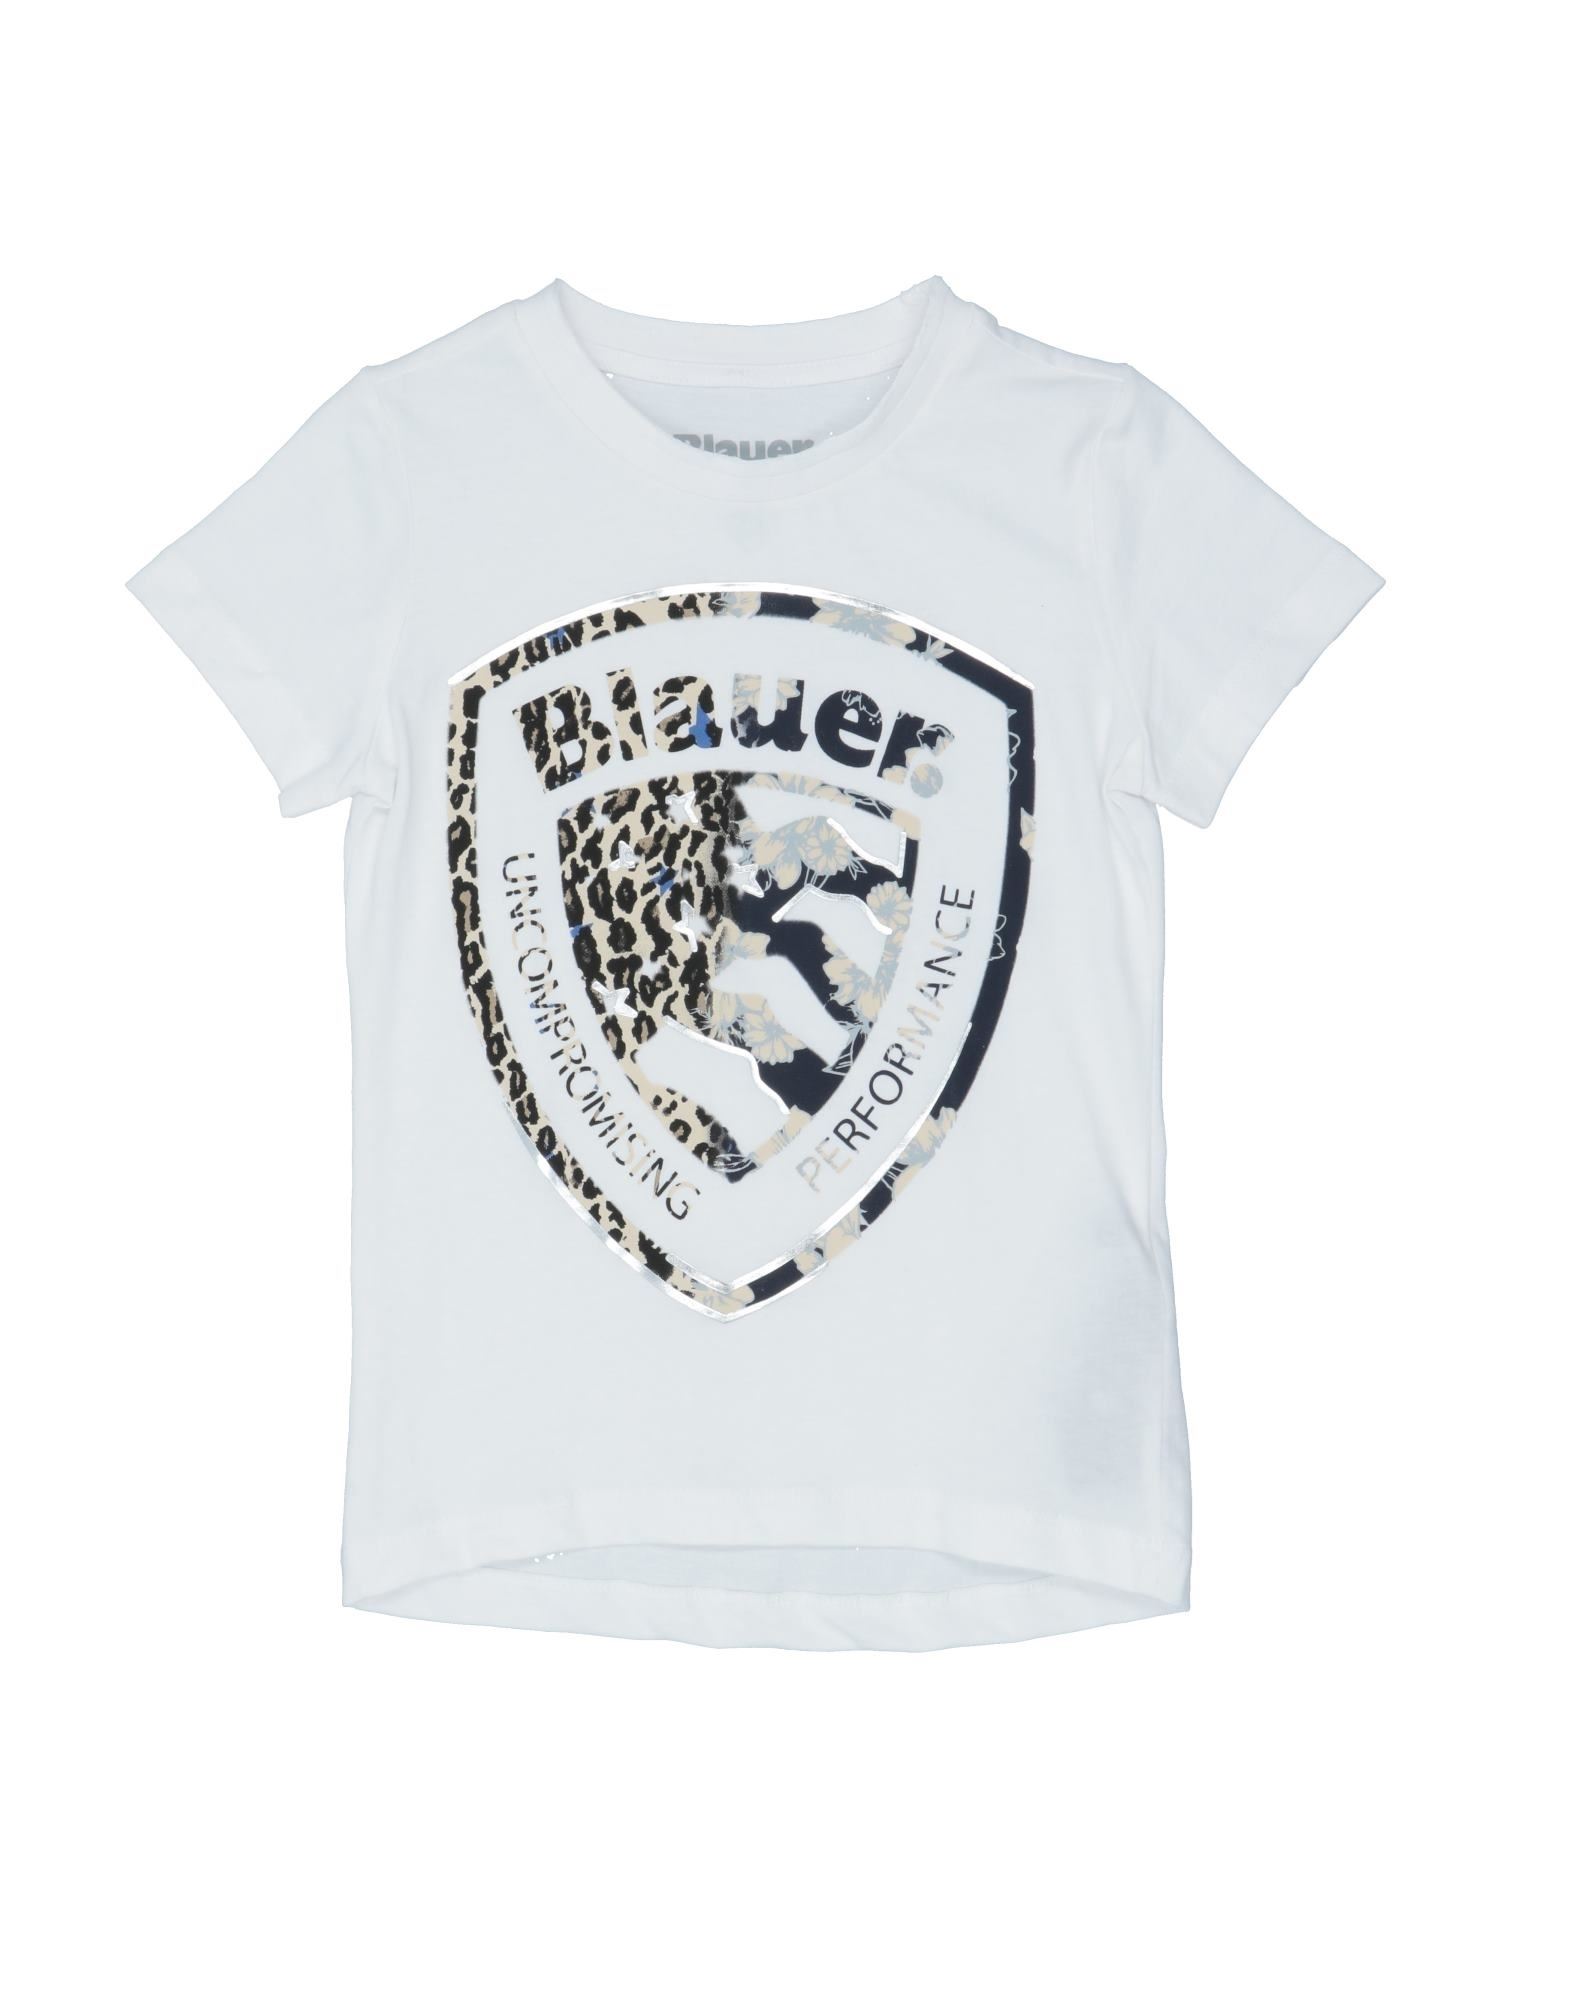 Blauer Kids' T-shirts In White